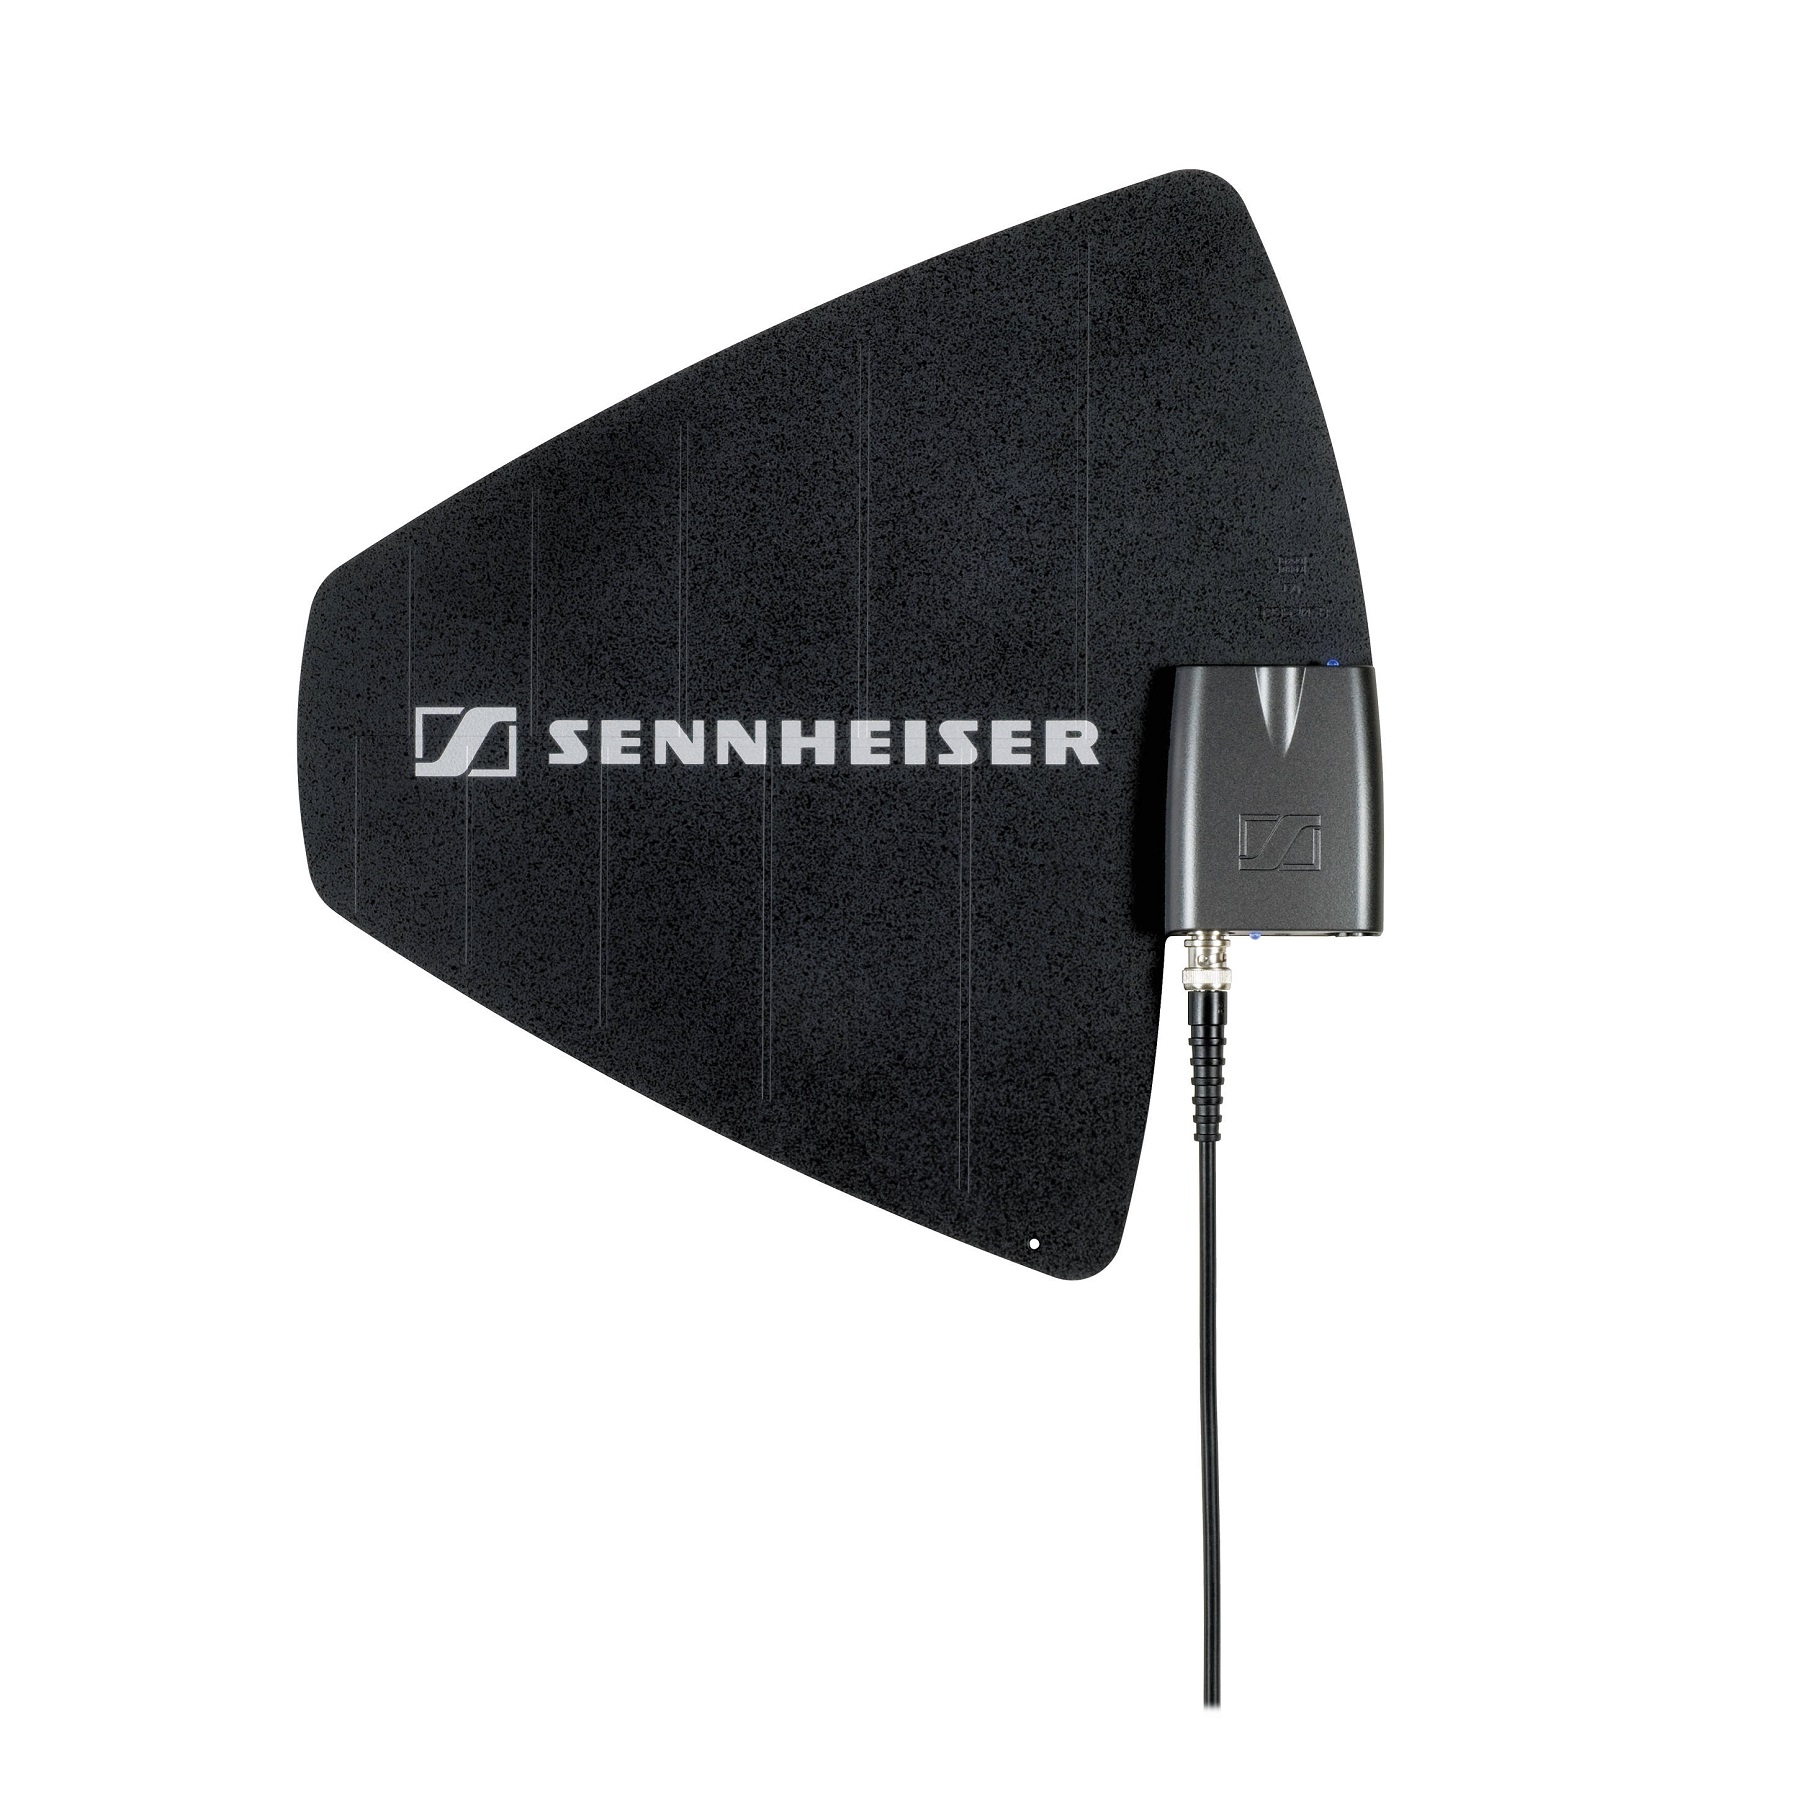 SENNHEISER AD 3700 - активная направленная широкополосная антенна с бустером (470 – 866 МГц)